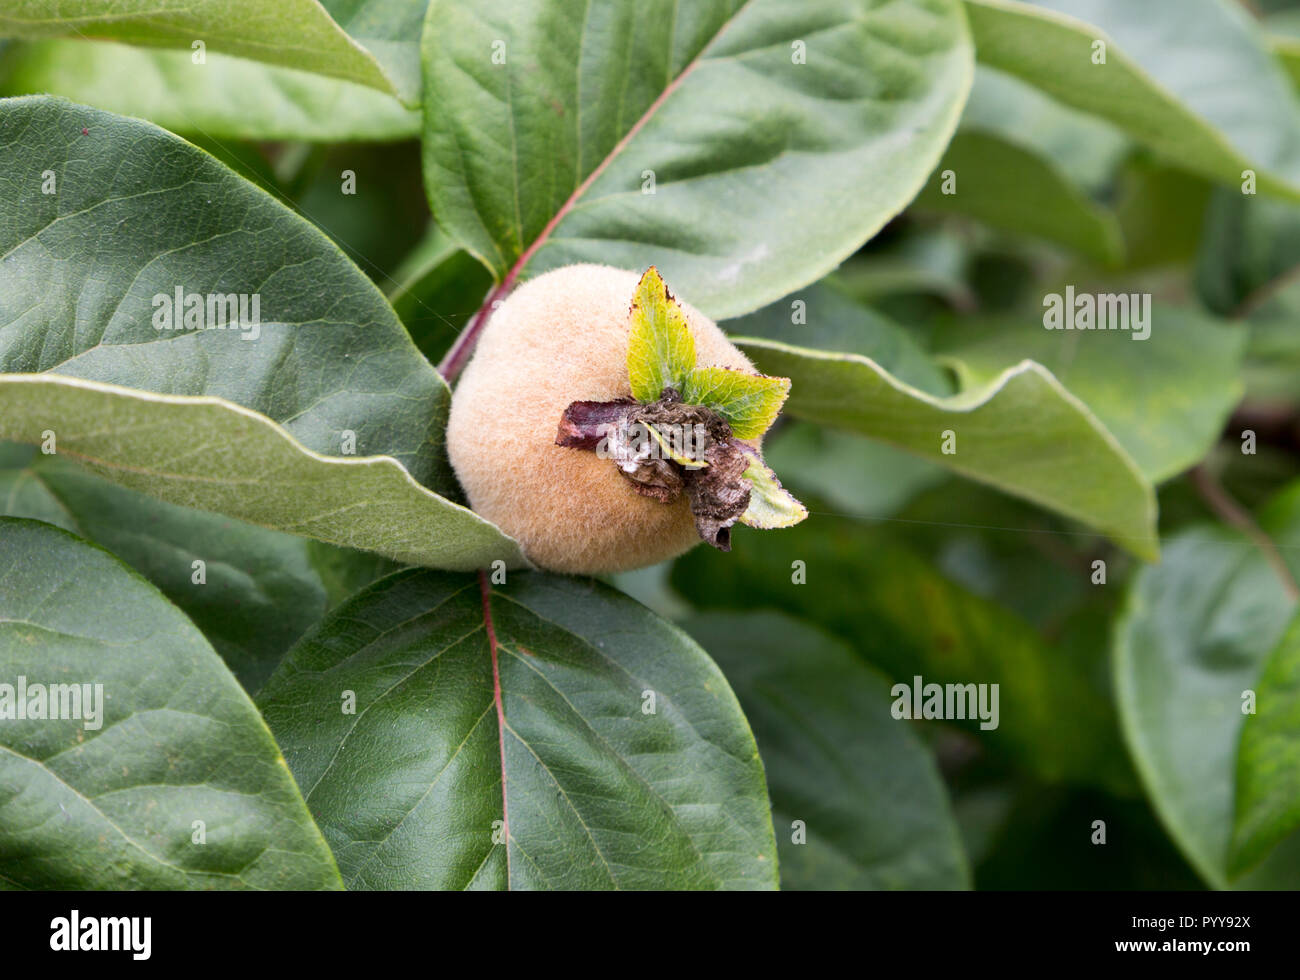 Le mele cotogne Frutta, Cydonia oblonga, cresce sugli alberi, Suffolk, Inghilterra, Regno Unito Foto Stock